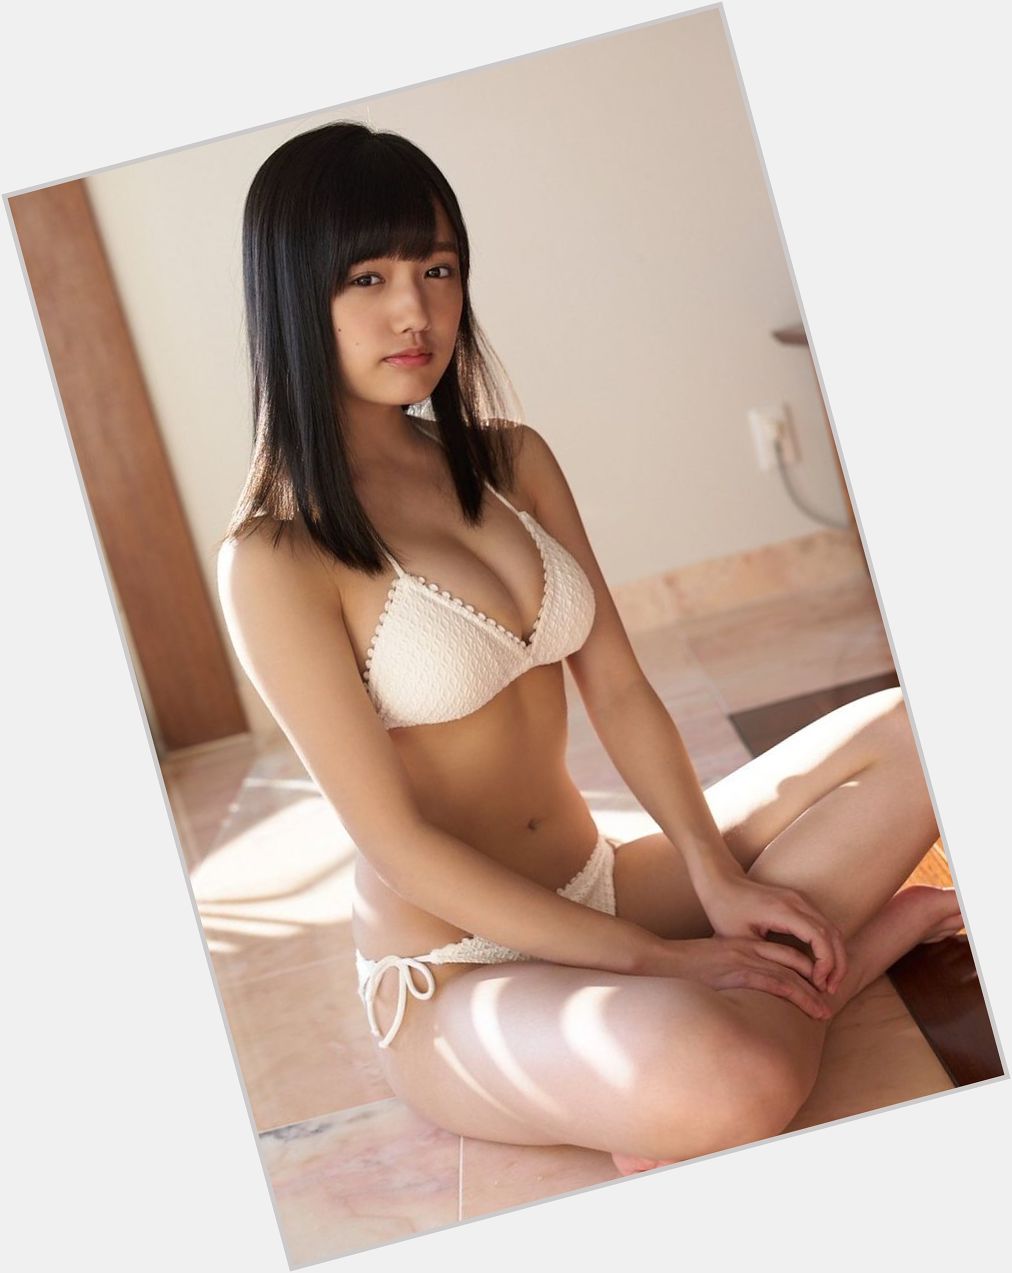 <a href="/hot-women/sakura-ando/where-dating-news-photos">Sakura Ando</a>  